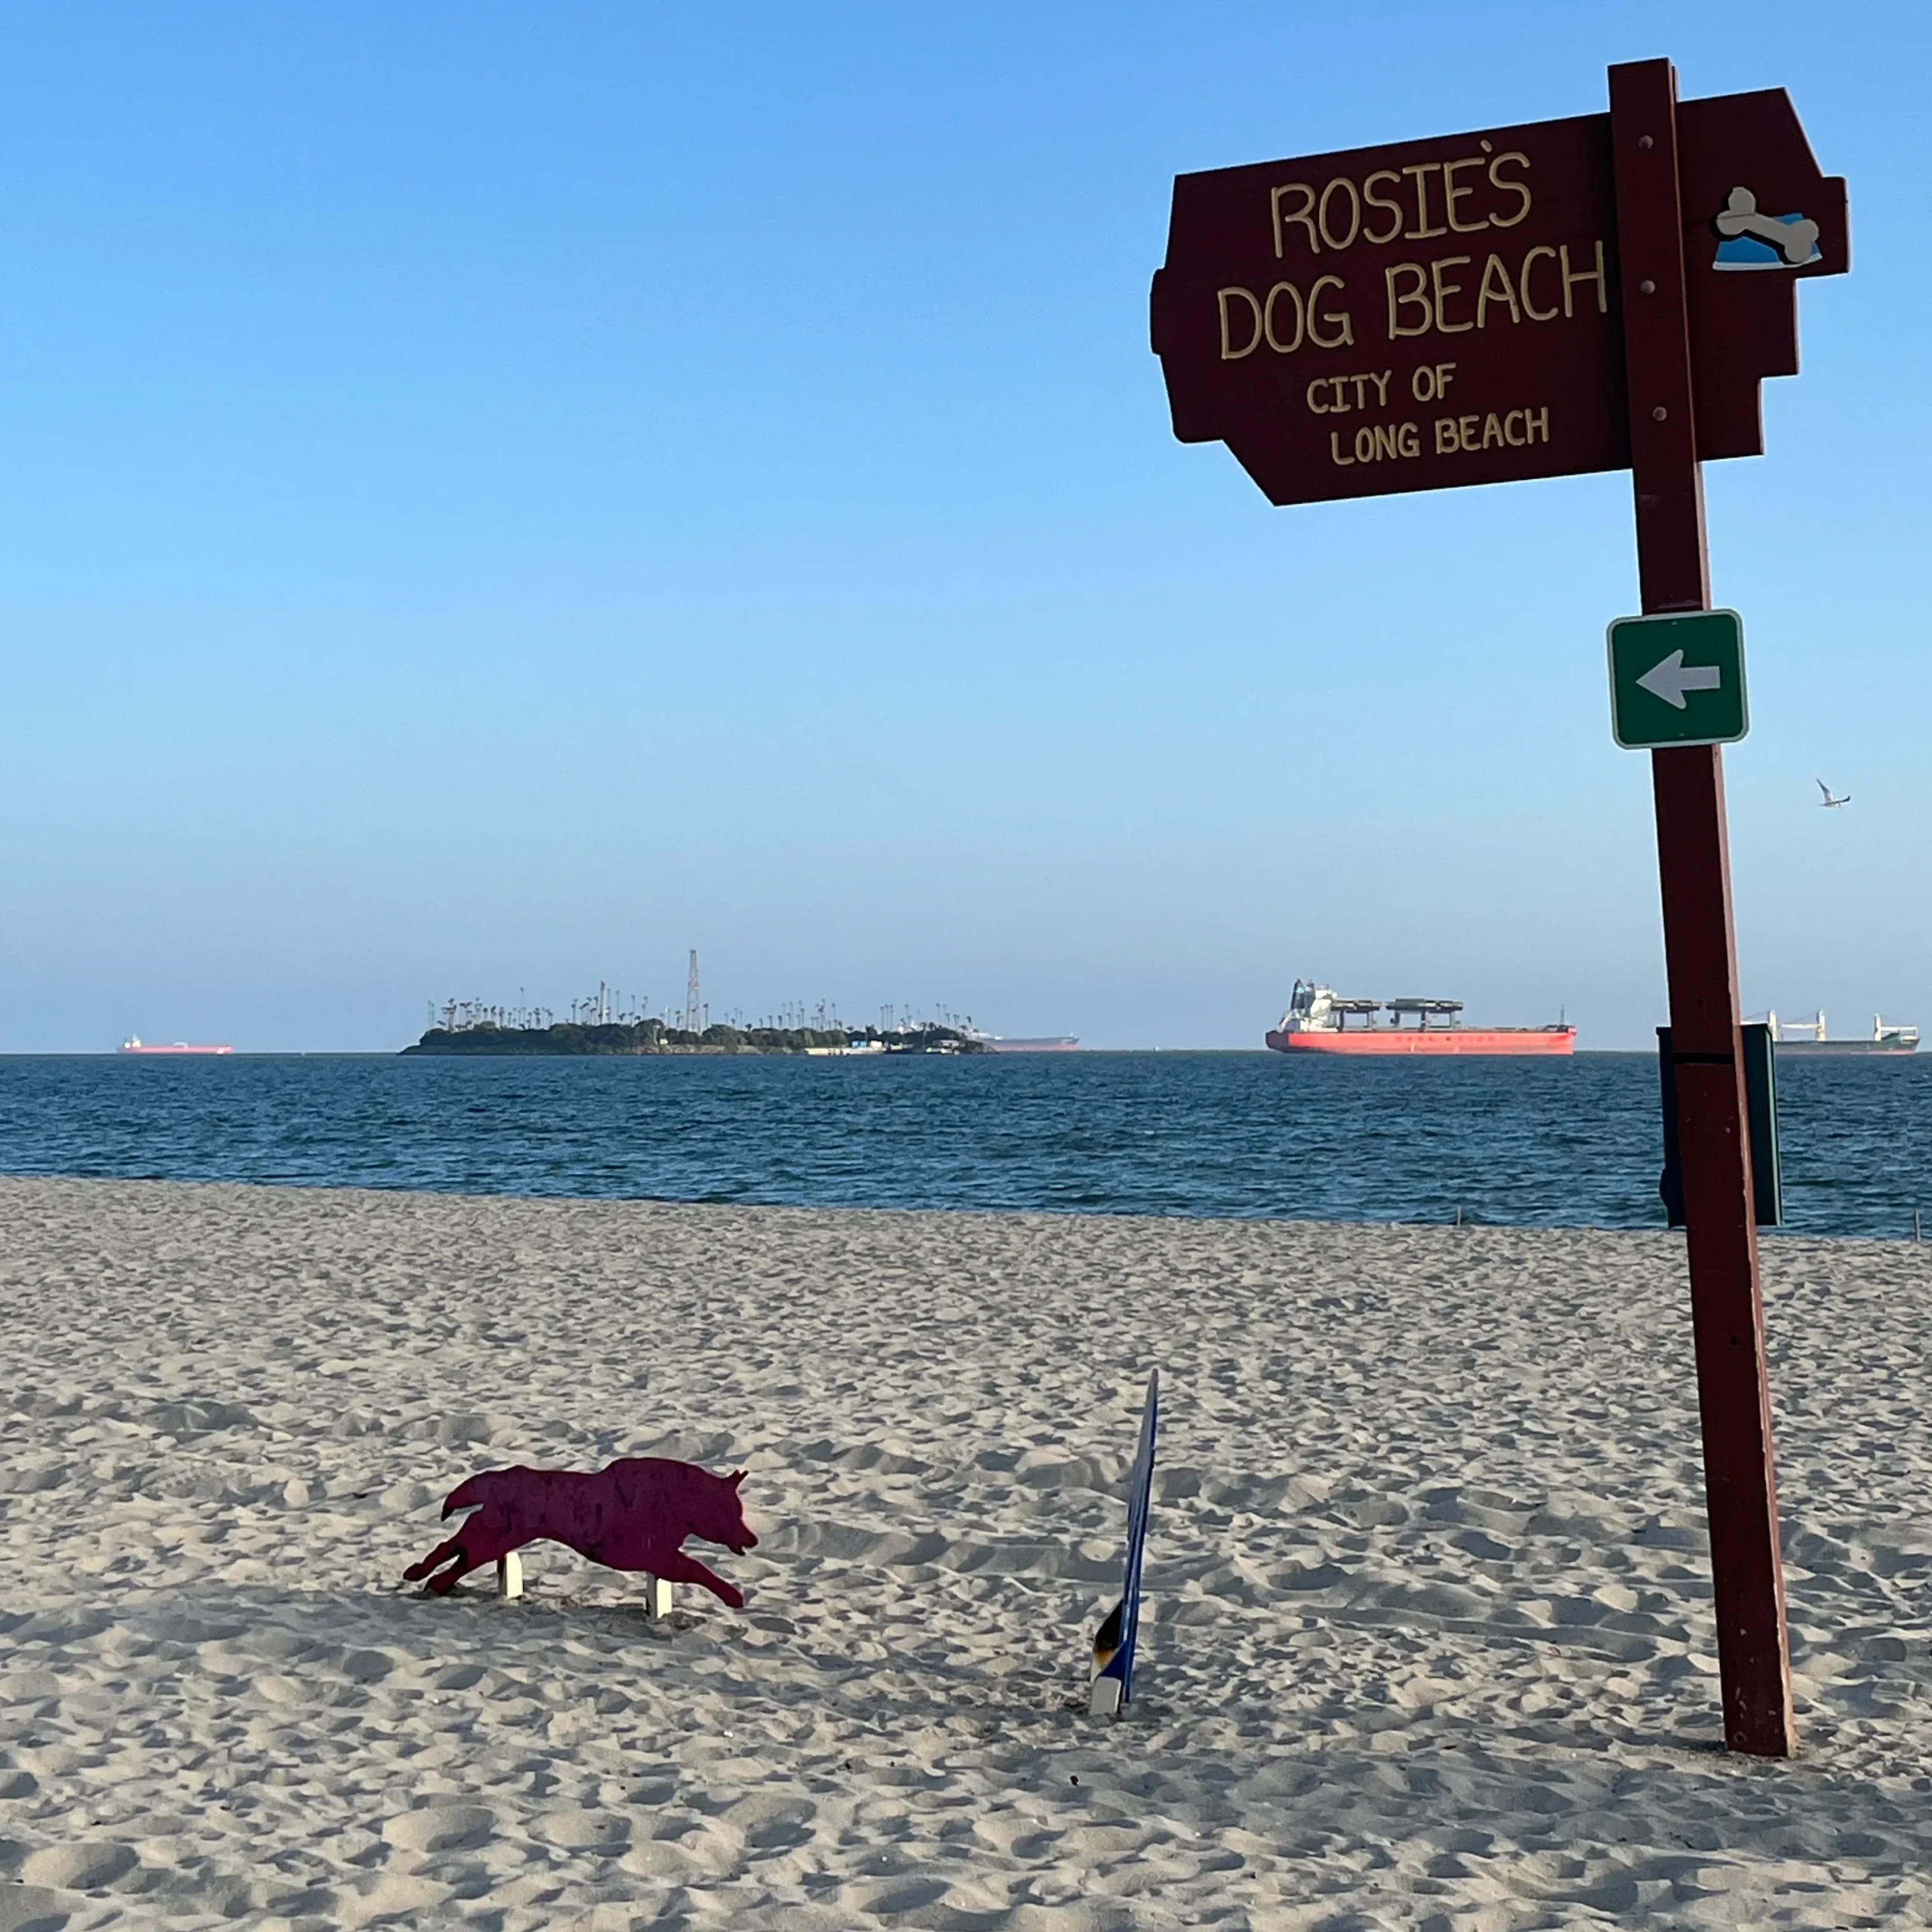 Rosie's Dog Beach, Long Beach CA